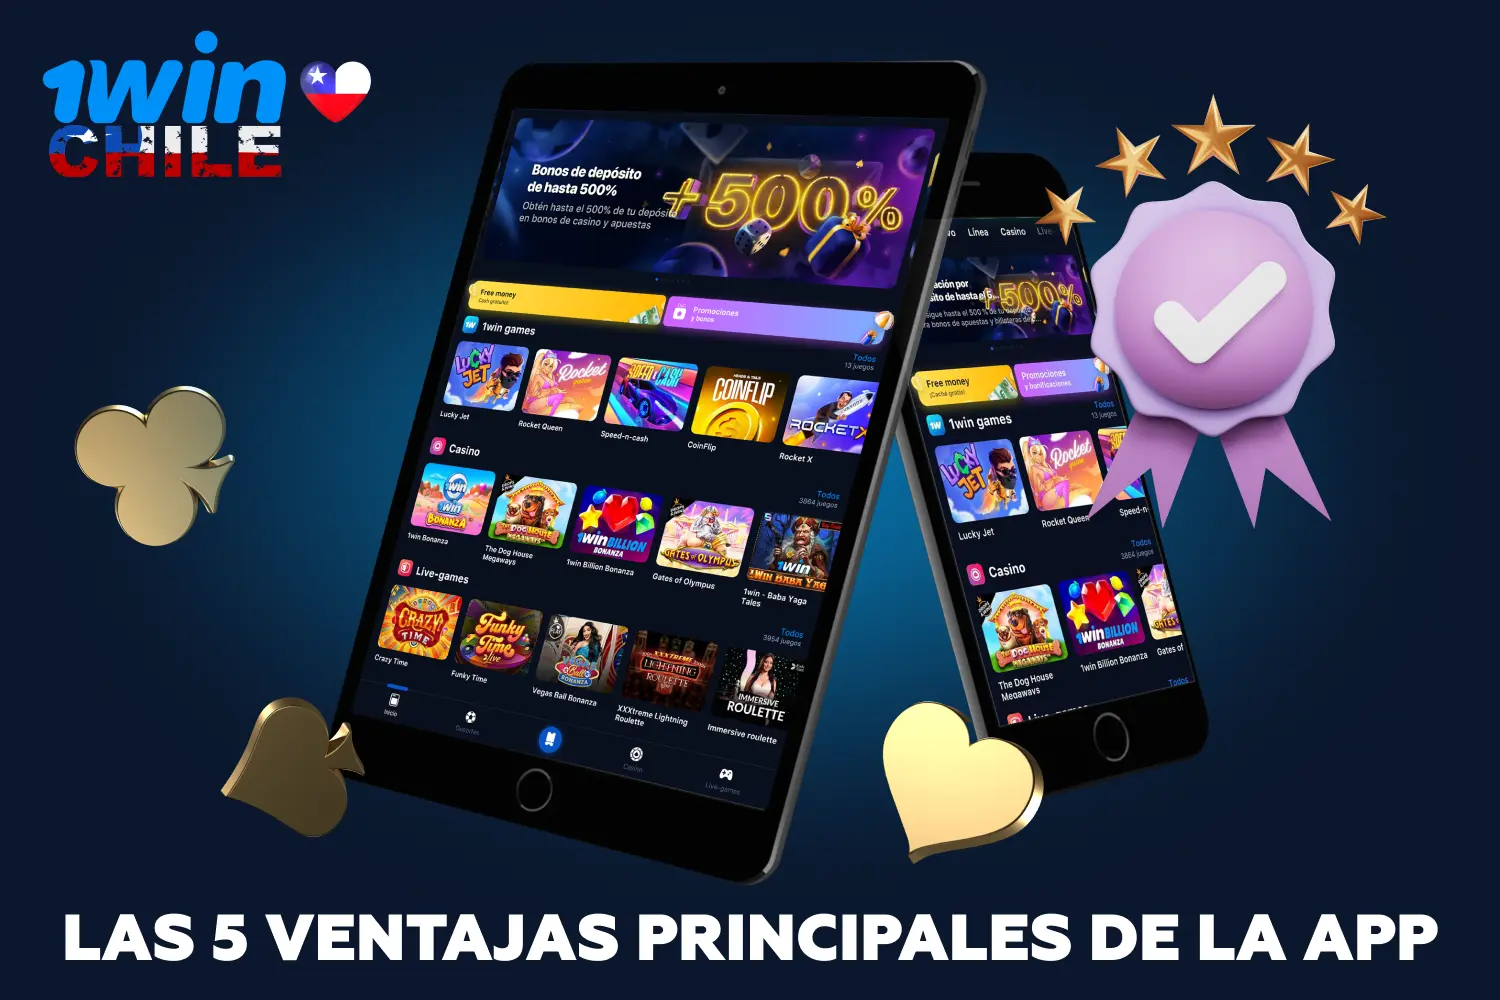 La aplicación móvil de 1win para Android e iOS cuenta con una amplia gama de valiosas funciones y capacidades que atraerán a los jugadores chilenos